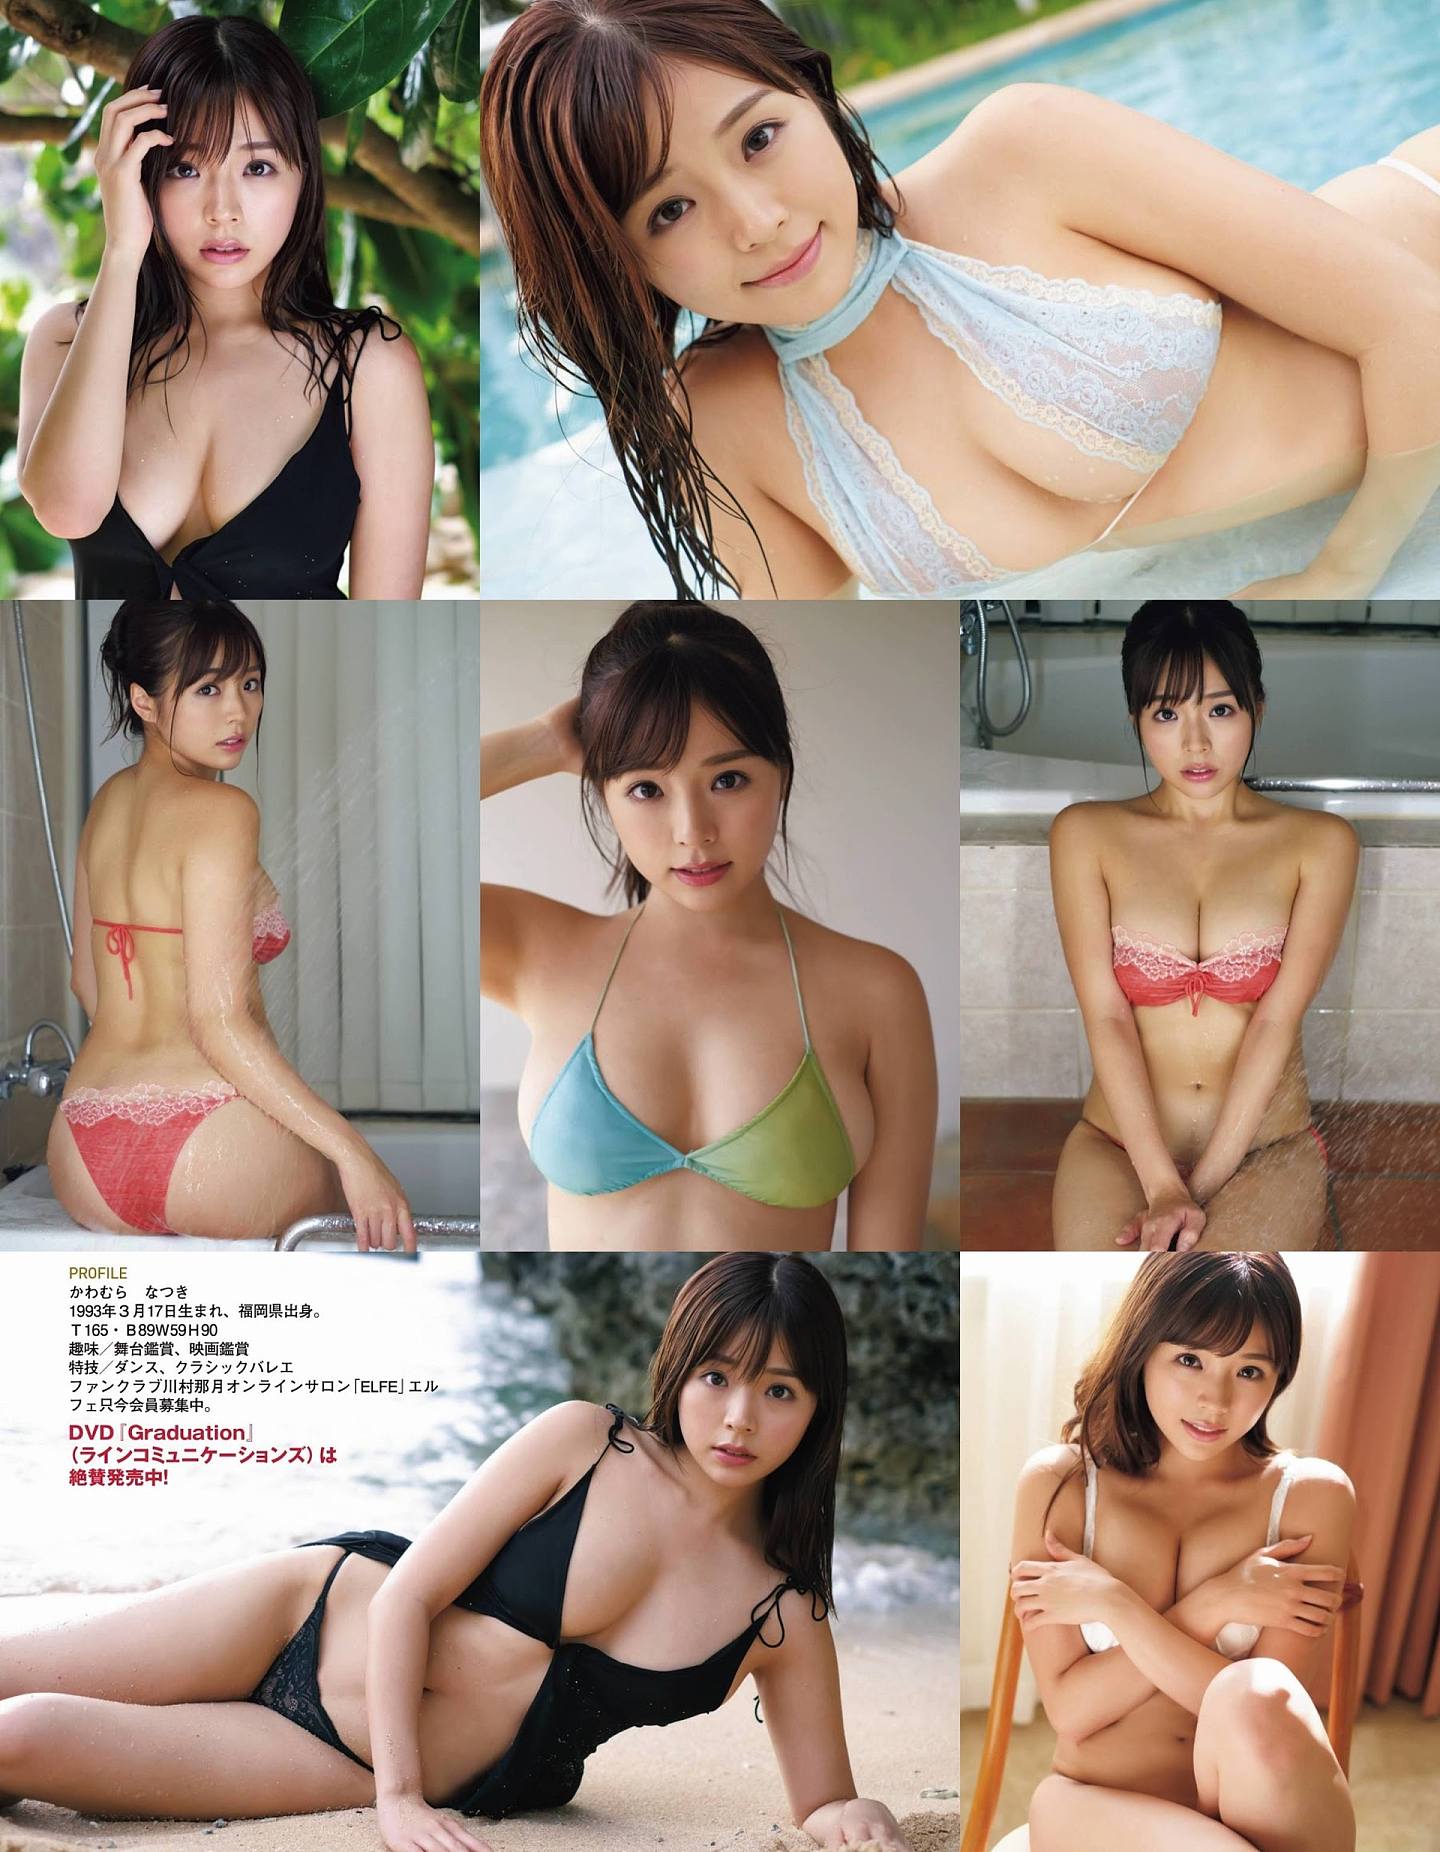 川村那月最近为多本杂志拍摄性感写真。 （《EX大众》）